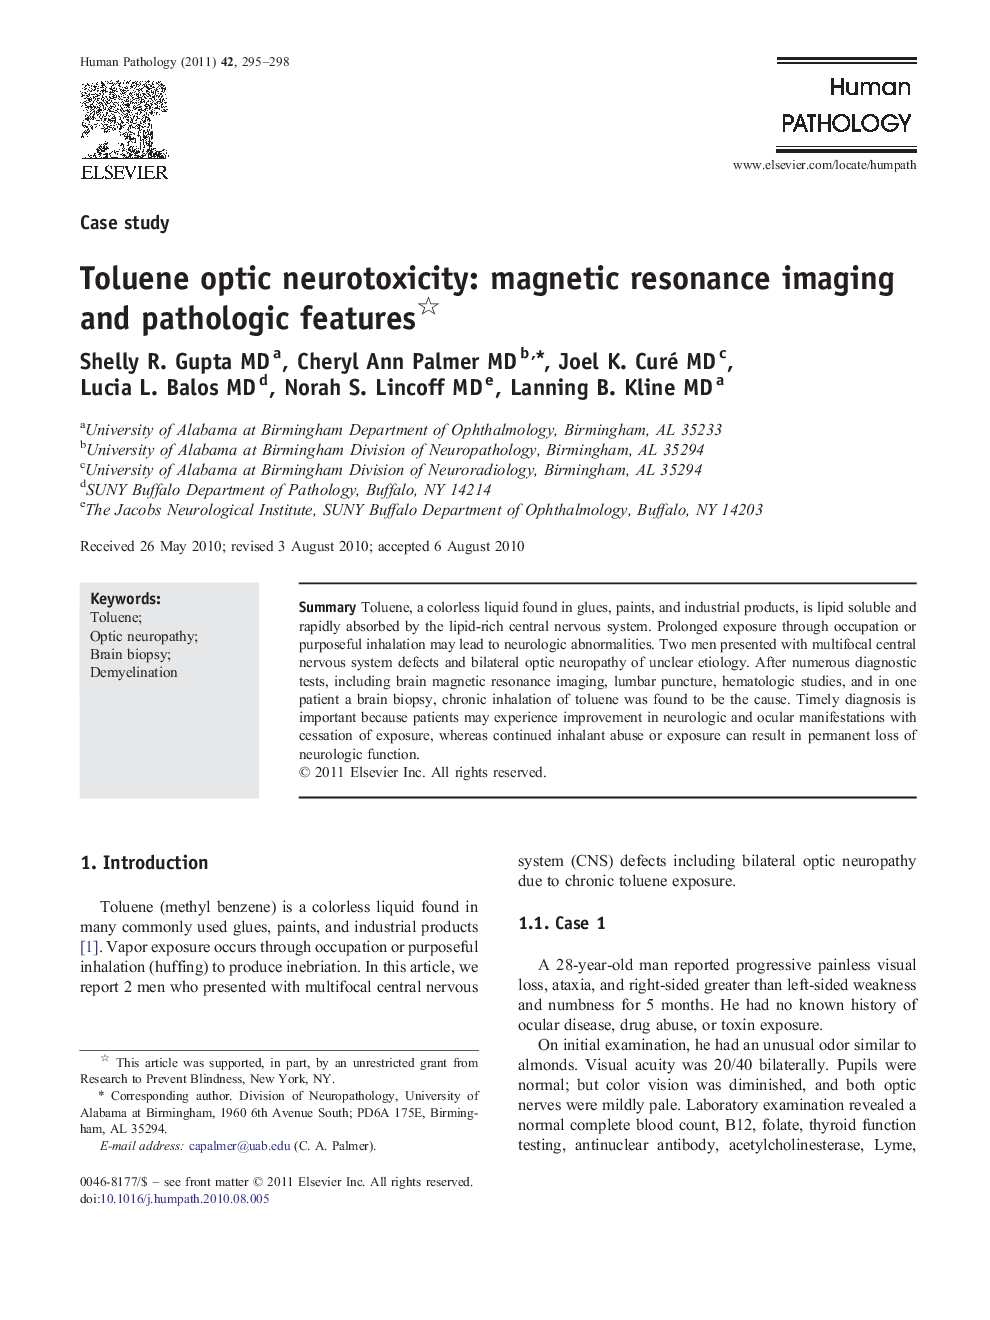 Toluene optic neurotoxicity: magnetic resonance imaging and pathologic features 